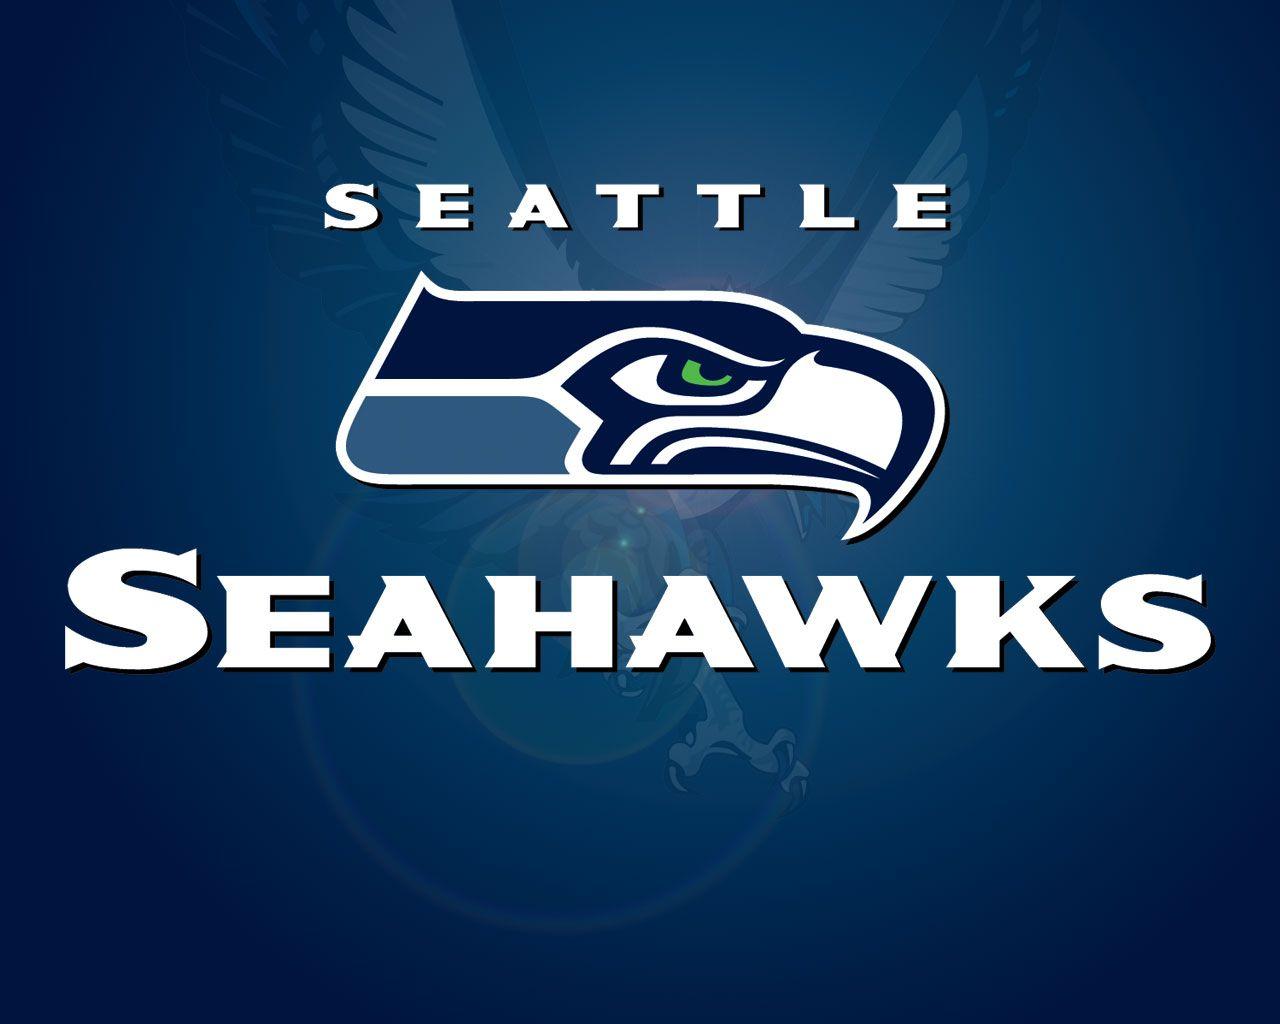 Seattle Seahawks wallpaperx1024